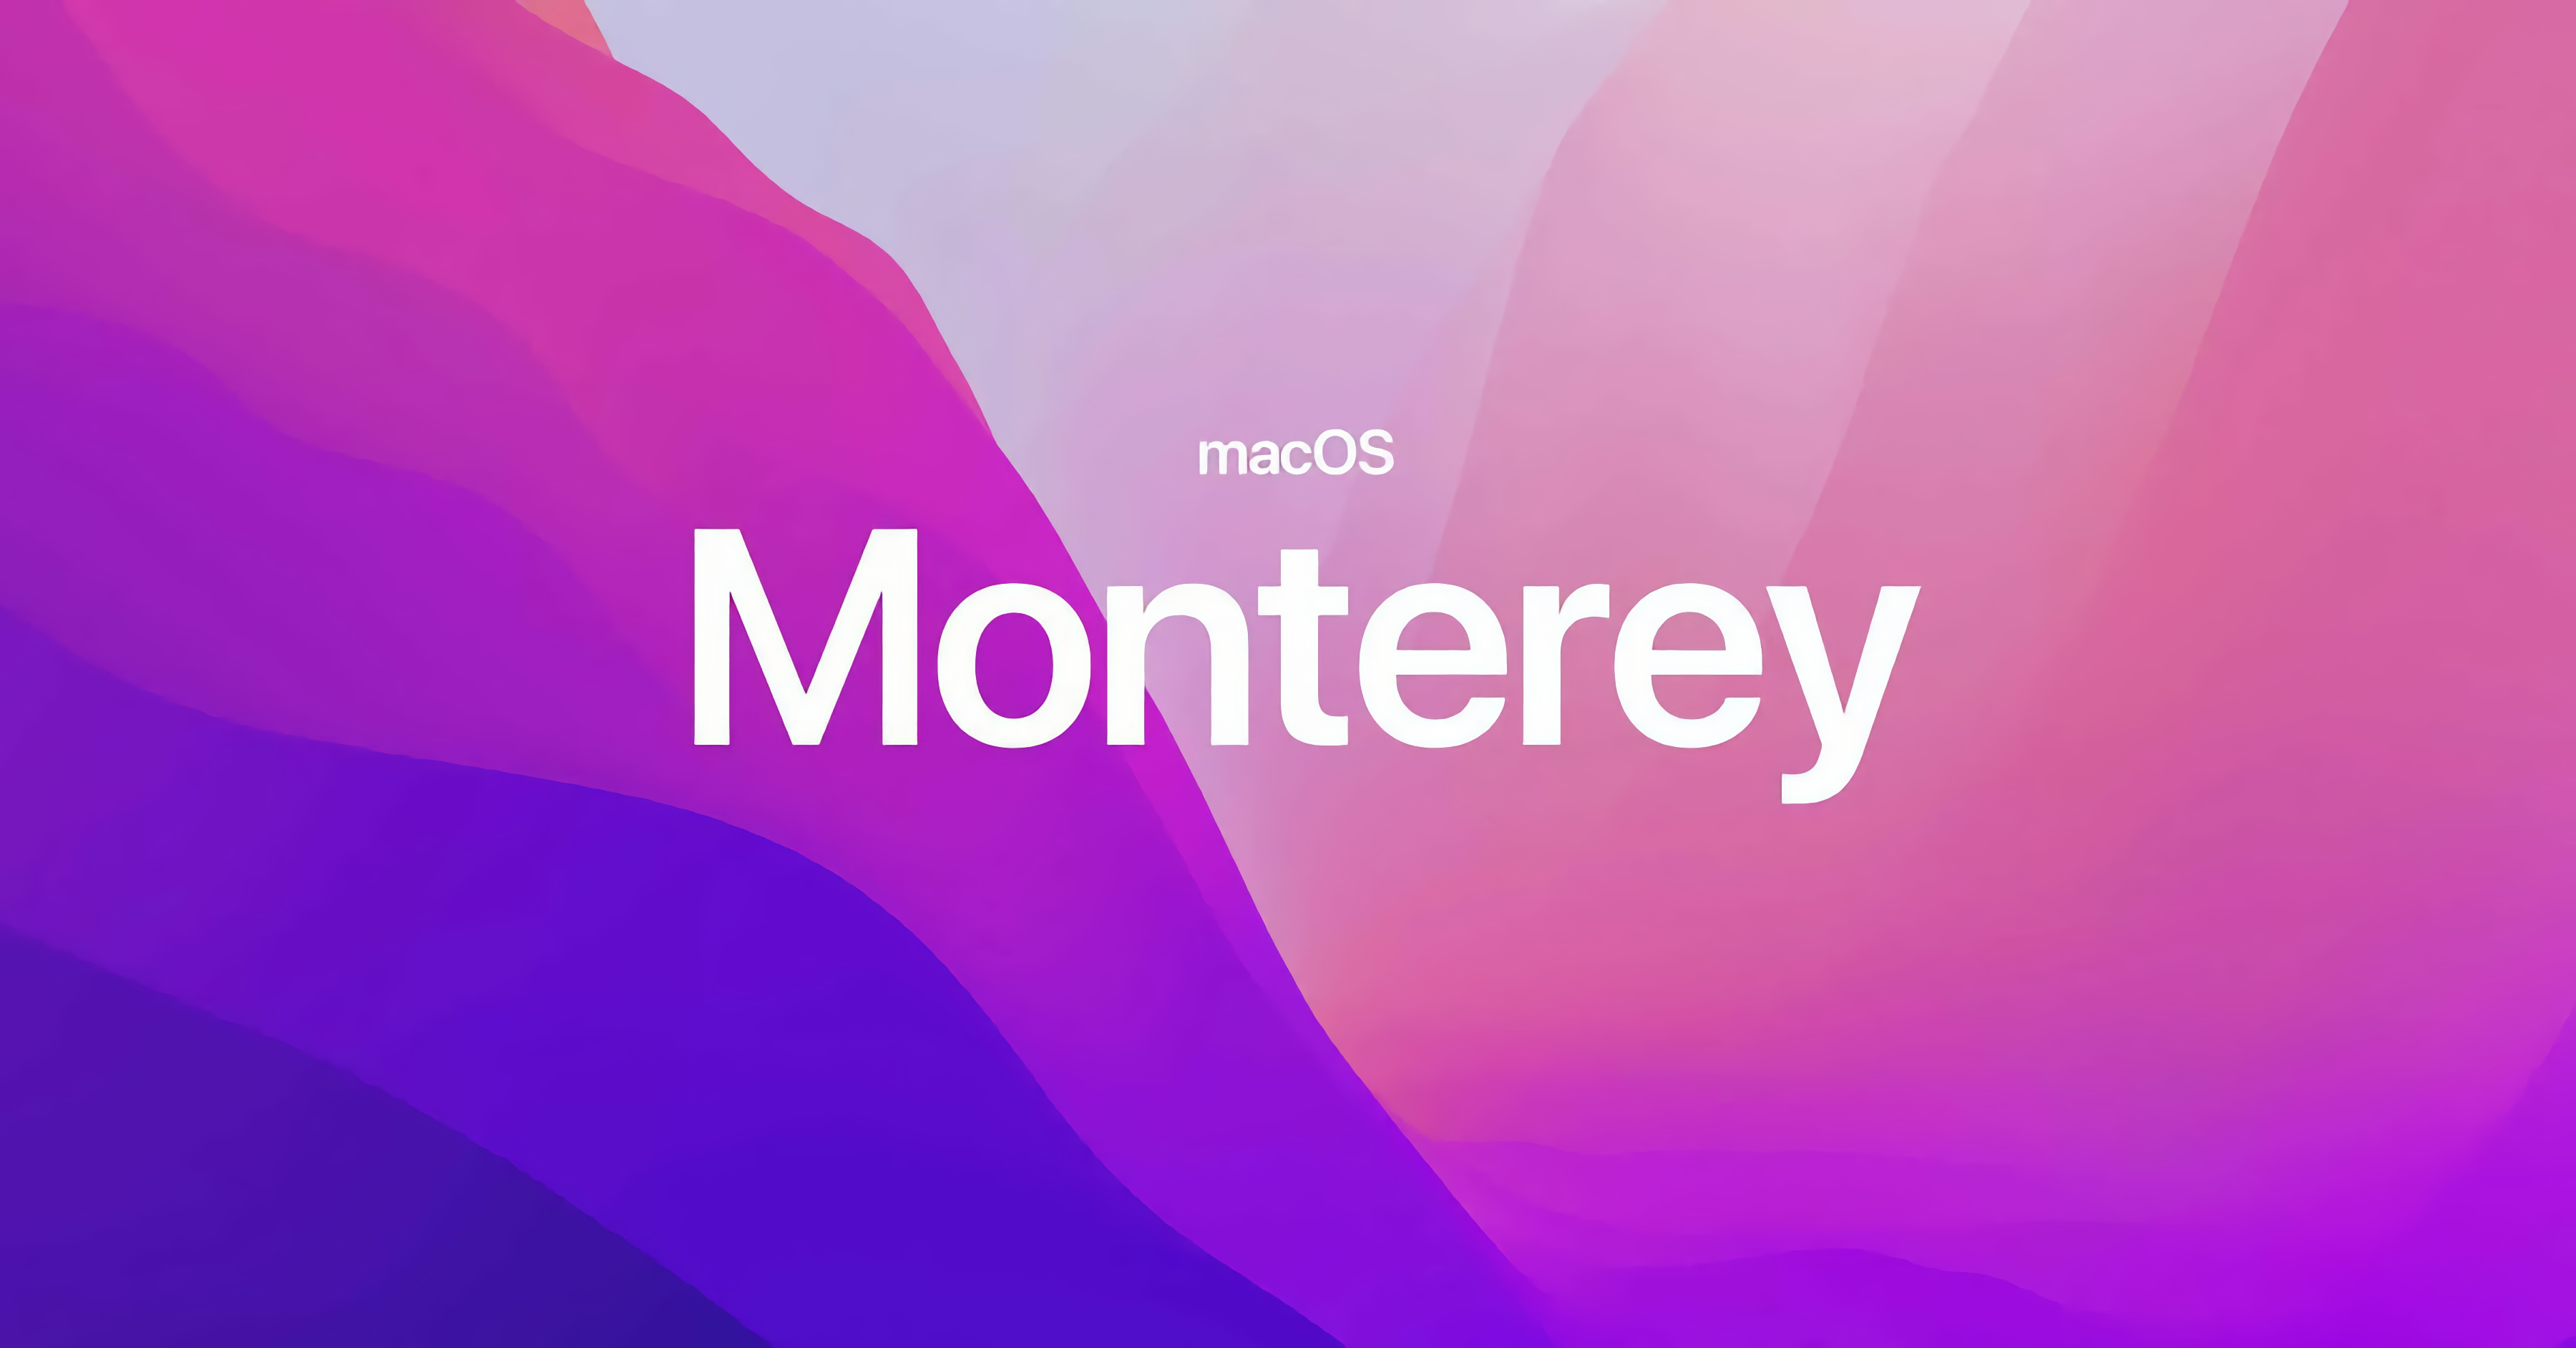 La version stable de macOS Monterey est sortie : AirPlay sur Mac, mise à jour de Safari, Live Text, prise en charge de Spatial Audio pour AirPods Pro et plus encore